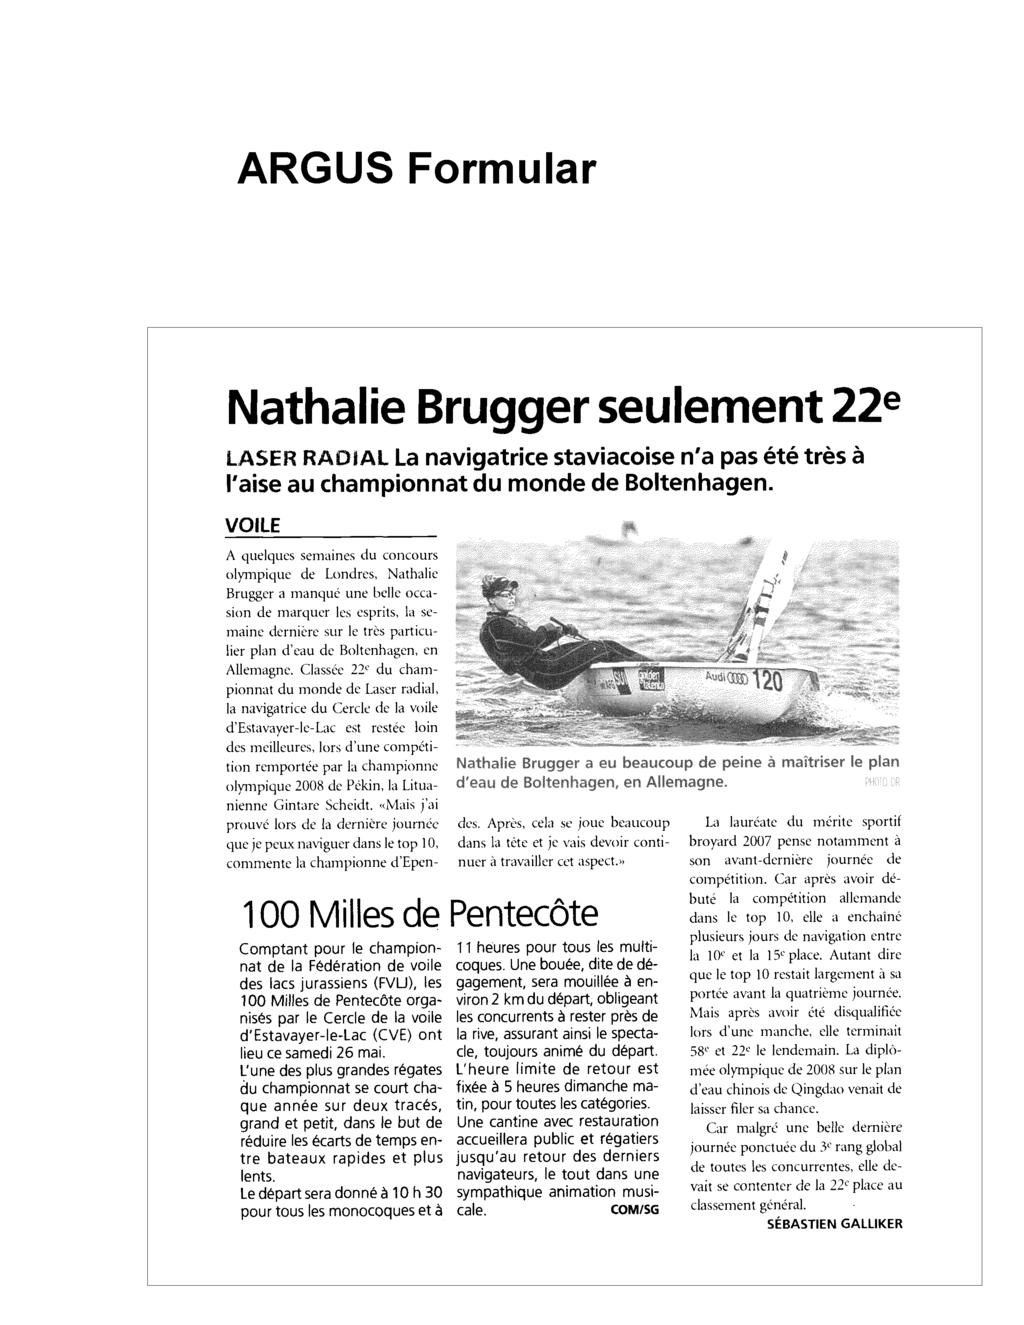 La Broye 24.05.2012 Seite 1 / 1 Auflage/ Seite 9388 / 27 6064 Ausgaben 50 / J.